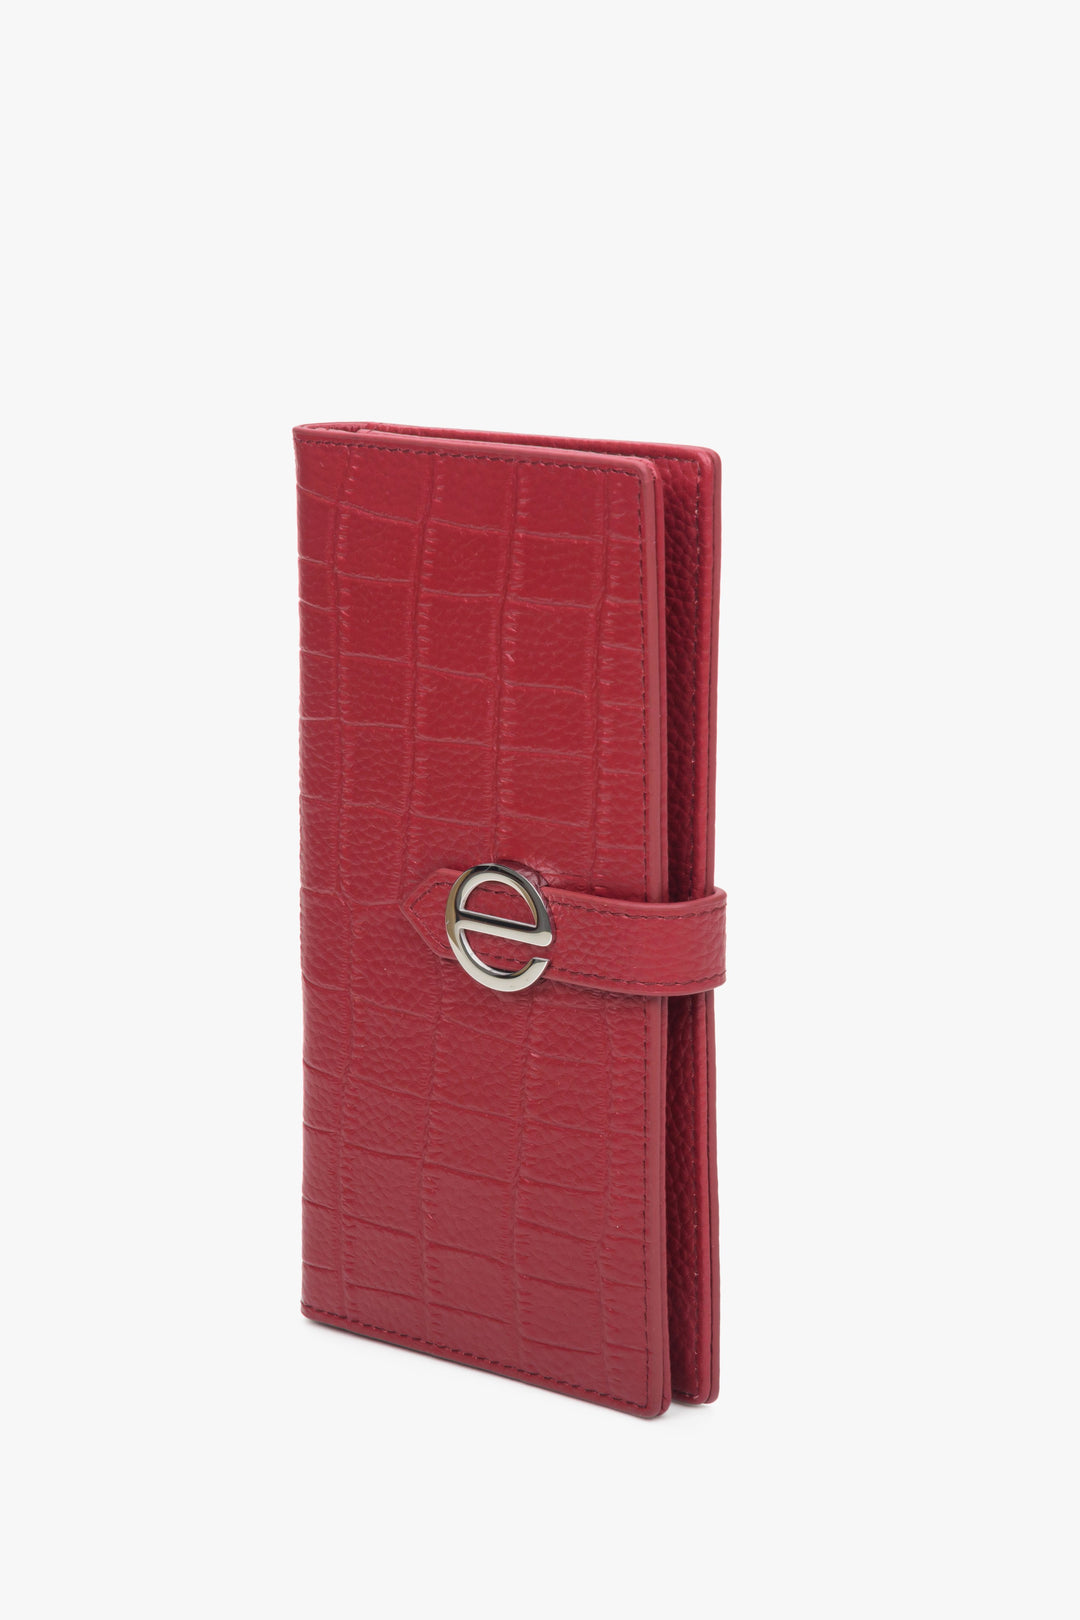 Czerwony, duży portfel damski ze srebrnymi okuciami Estro.